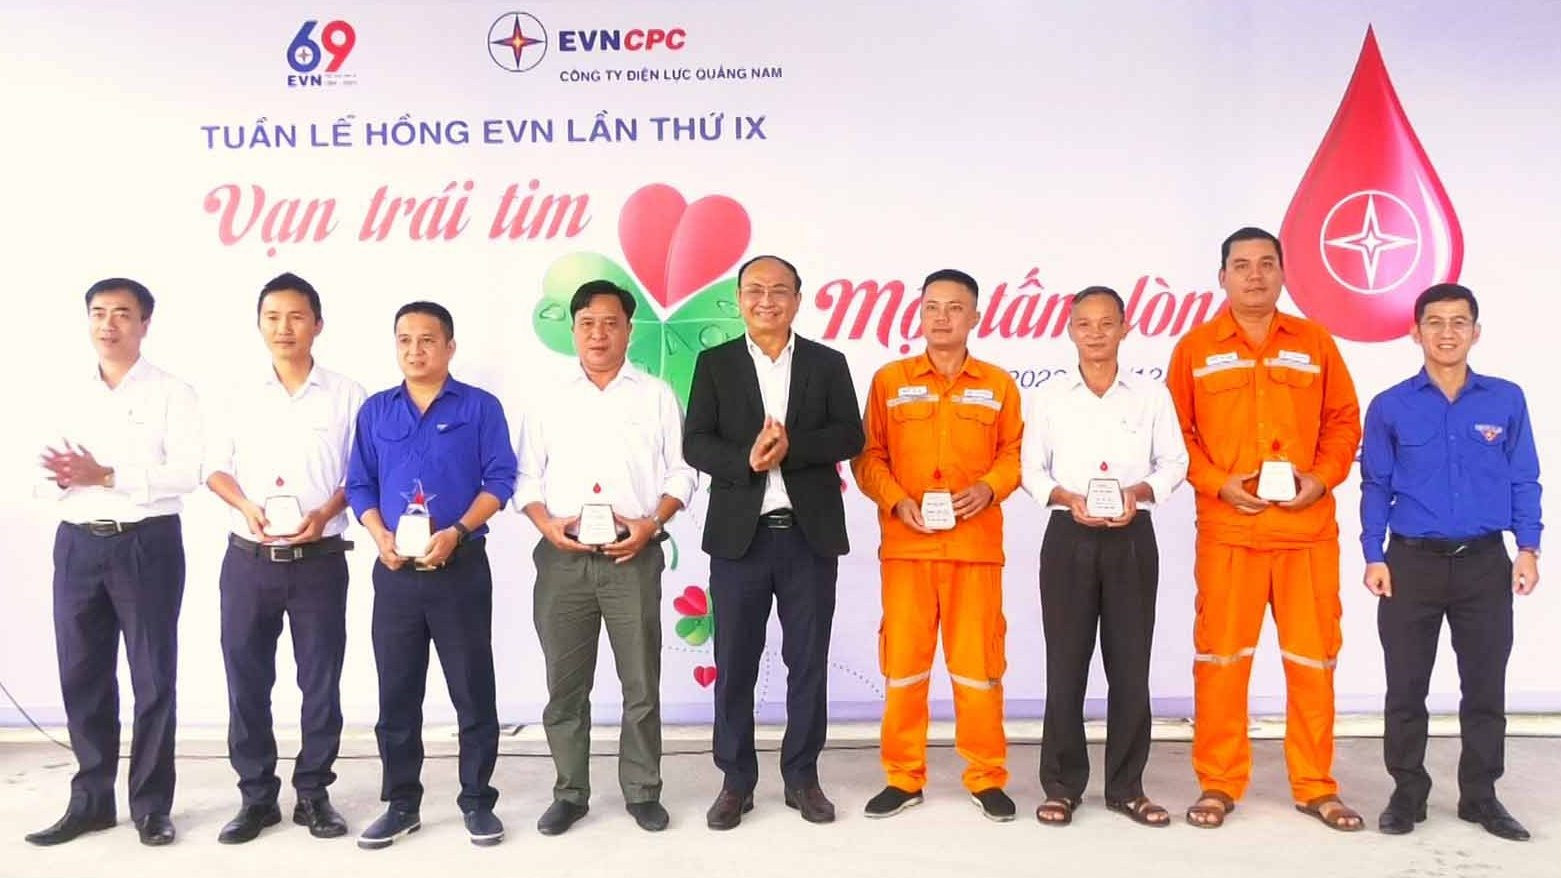 Dịp này, 7 cán bộ, công nhân viên PC Quảng Nam hiến máu 10 lần trở lên được công ty tặng biểu trưng “Ngôi sao nhân ái”.